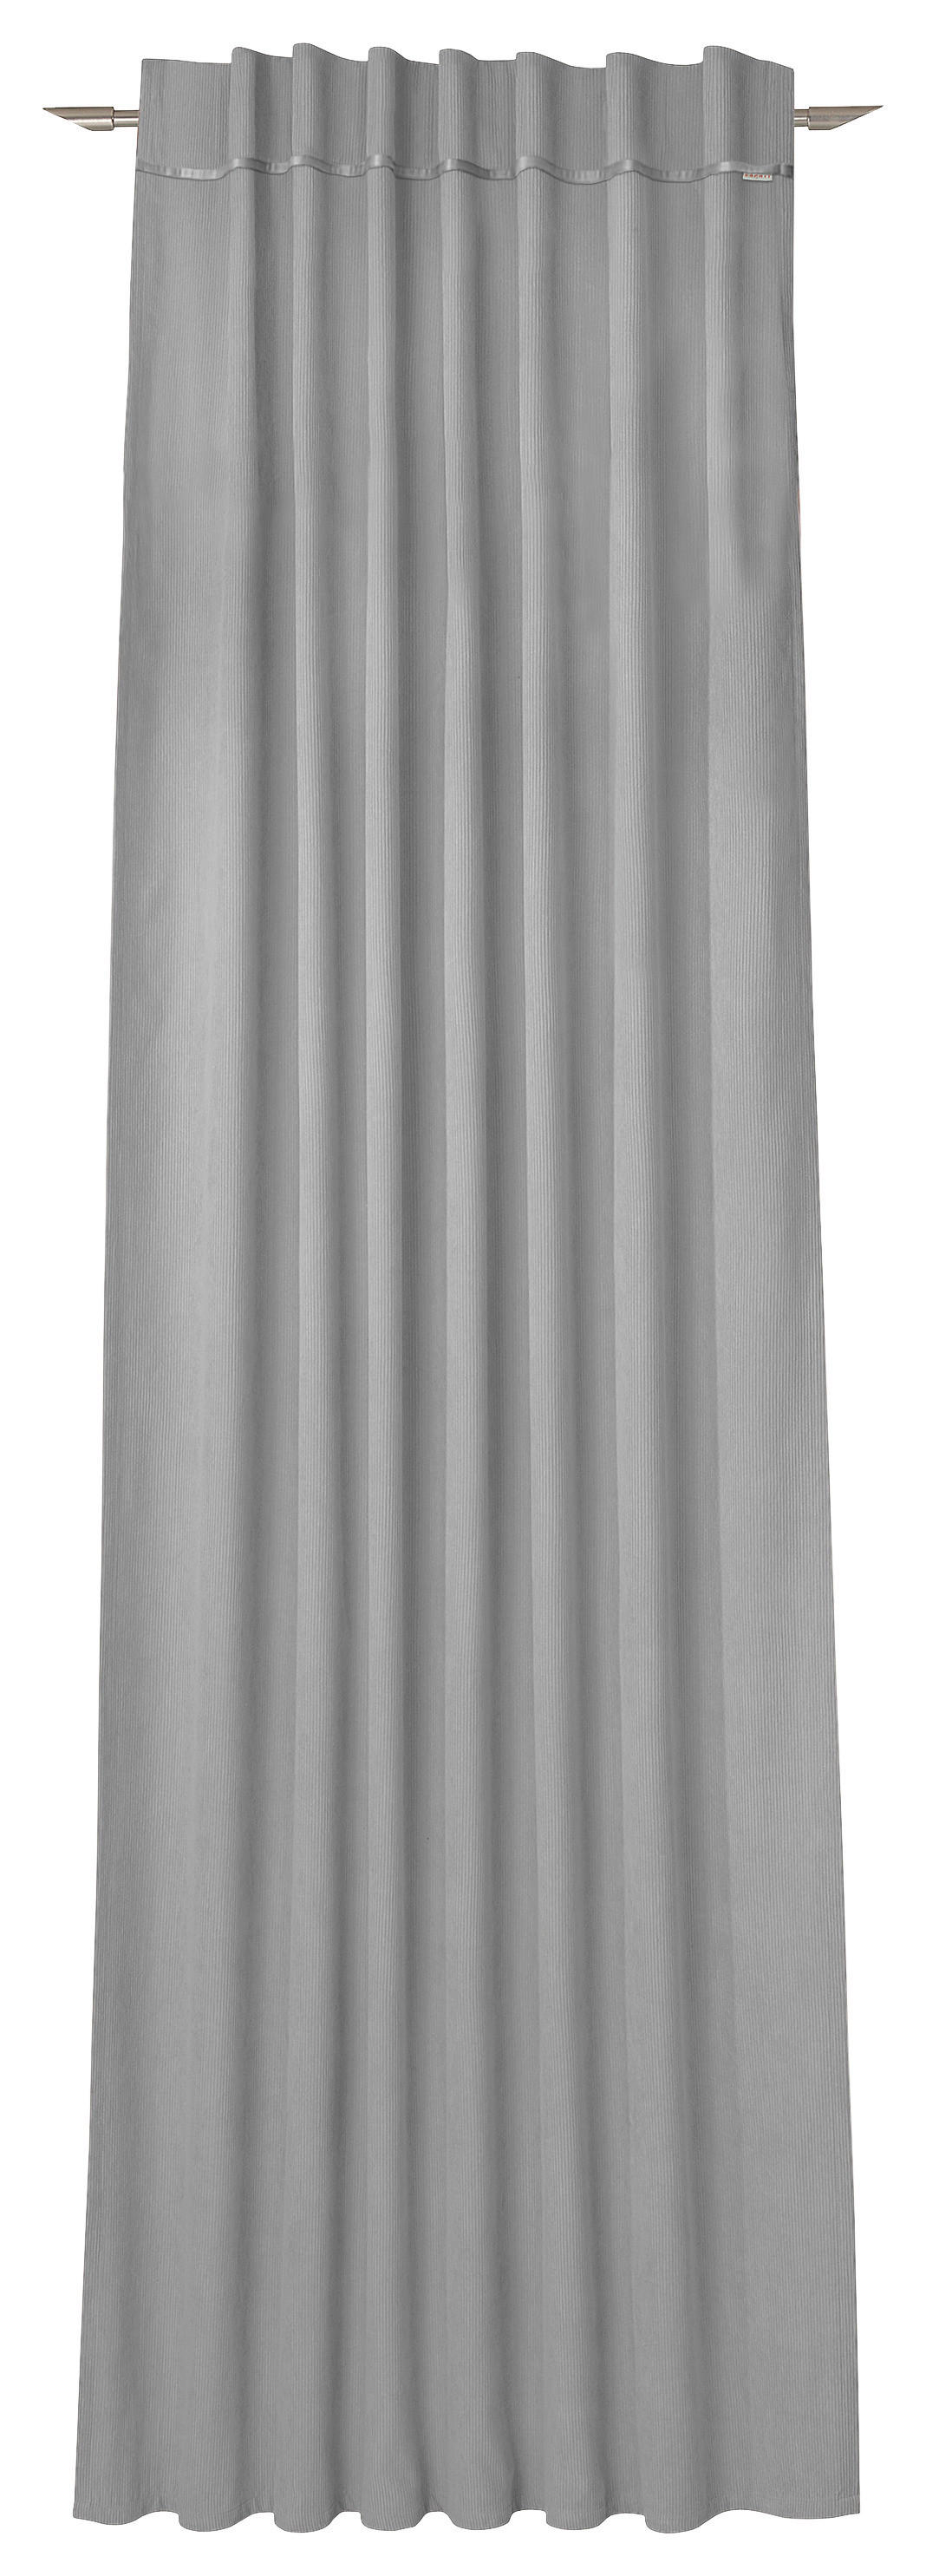 VORHANGSCHAL blickdicht 130/250 cm   - Grau, Design, Textil (130/250cm) - Esprit